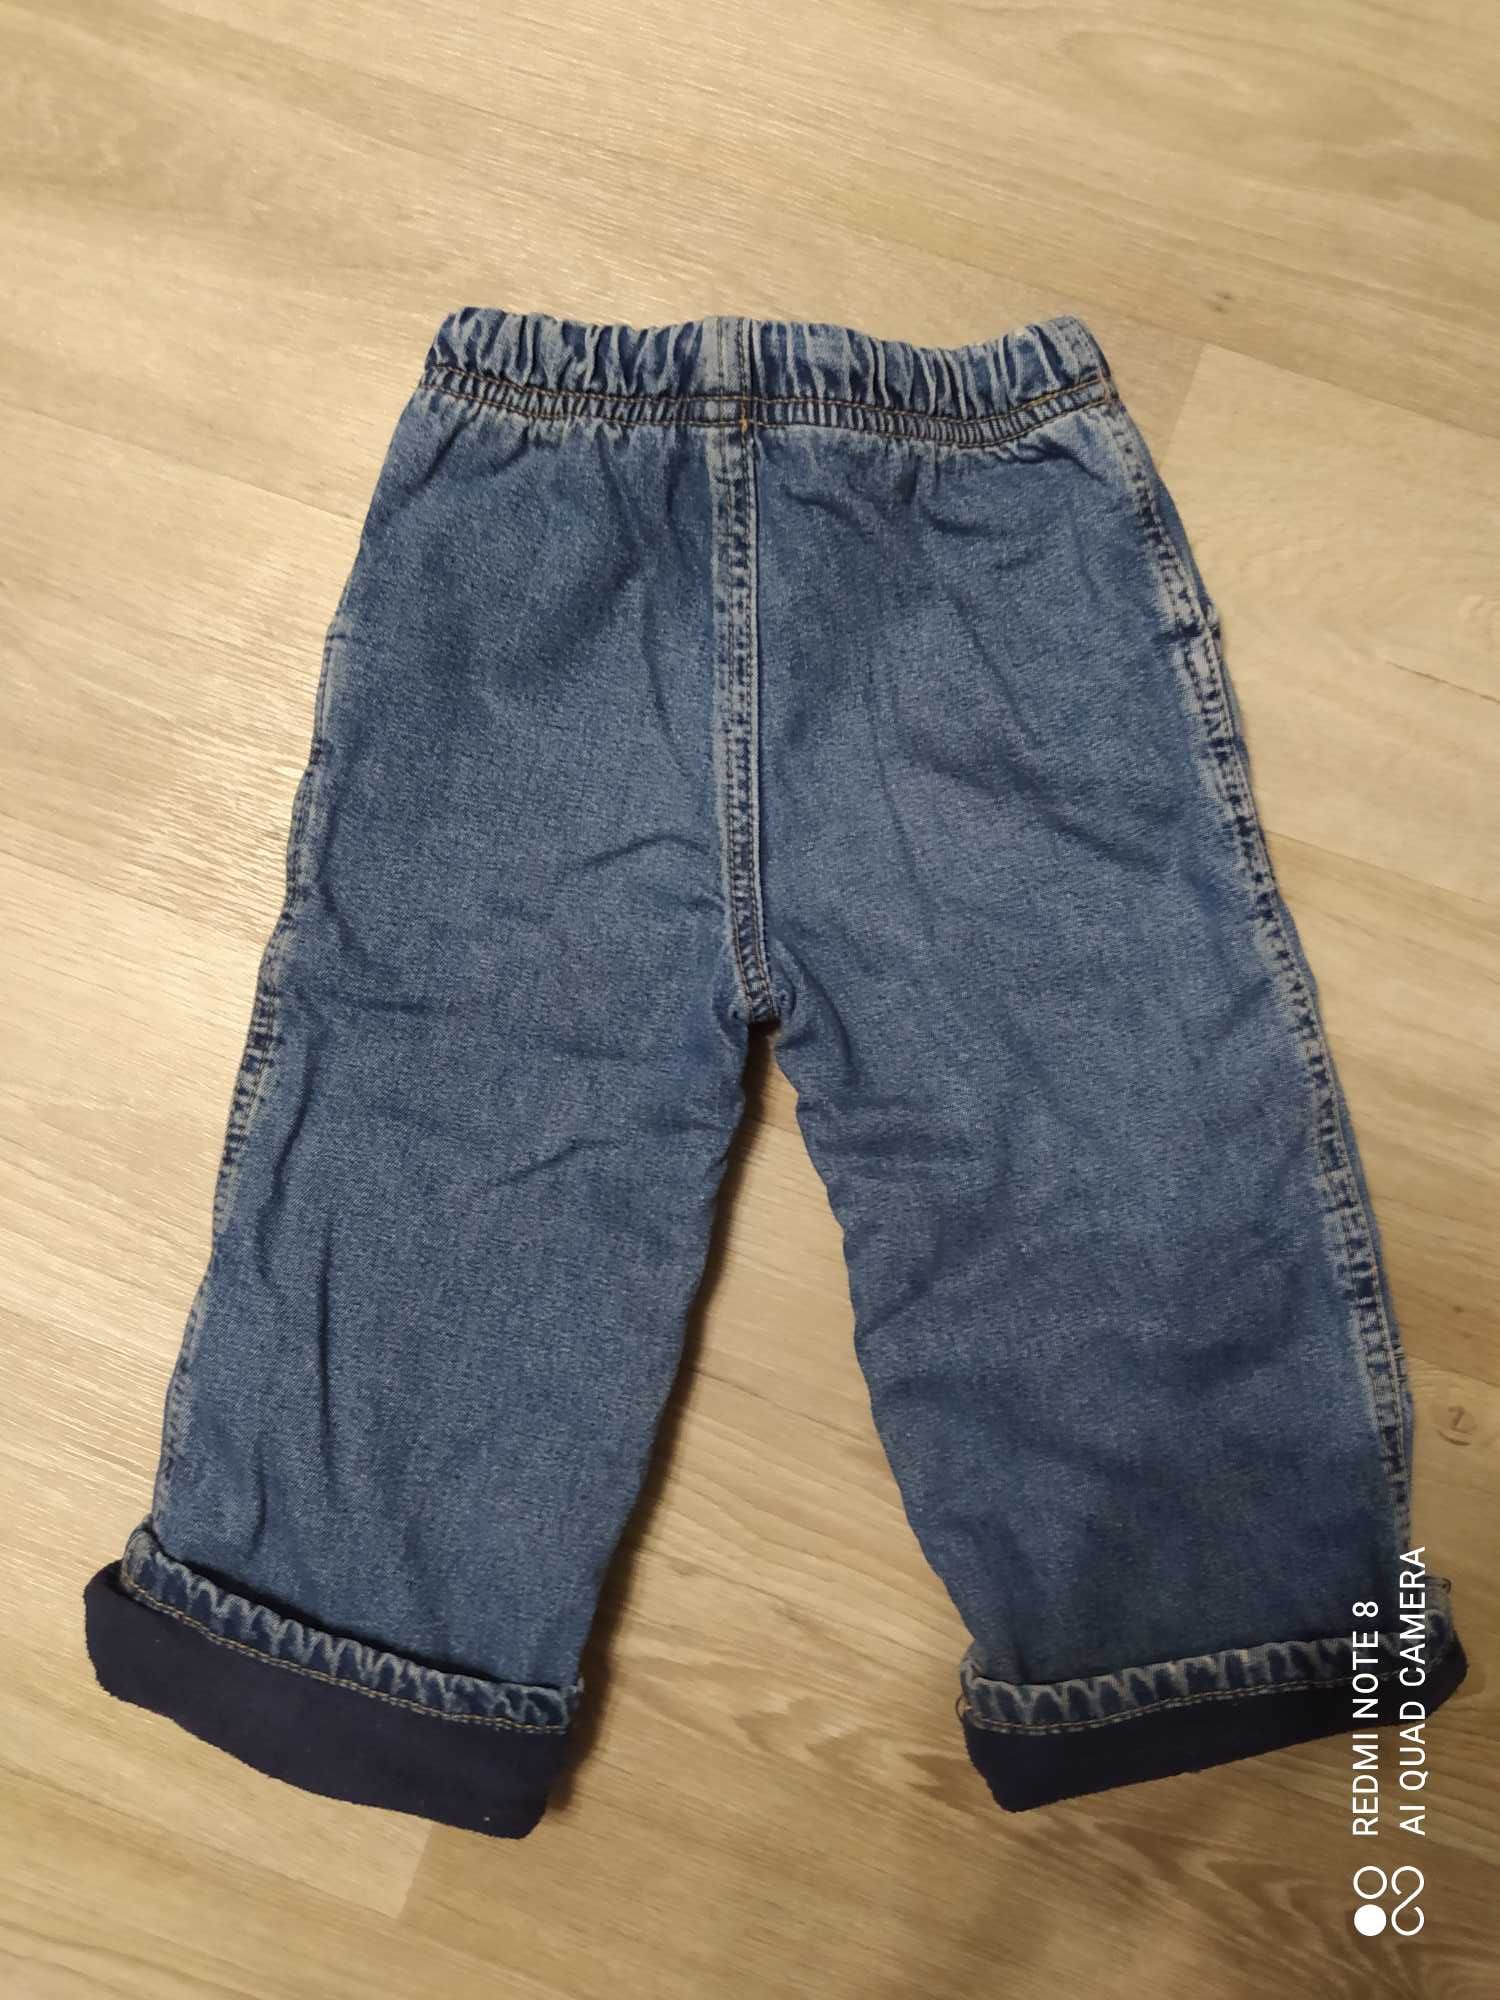 Фирменный джинсовый костюм (куртка, джинсы) на 2-4 года